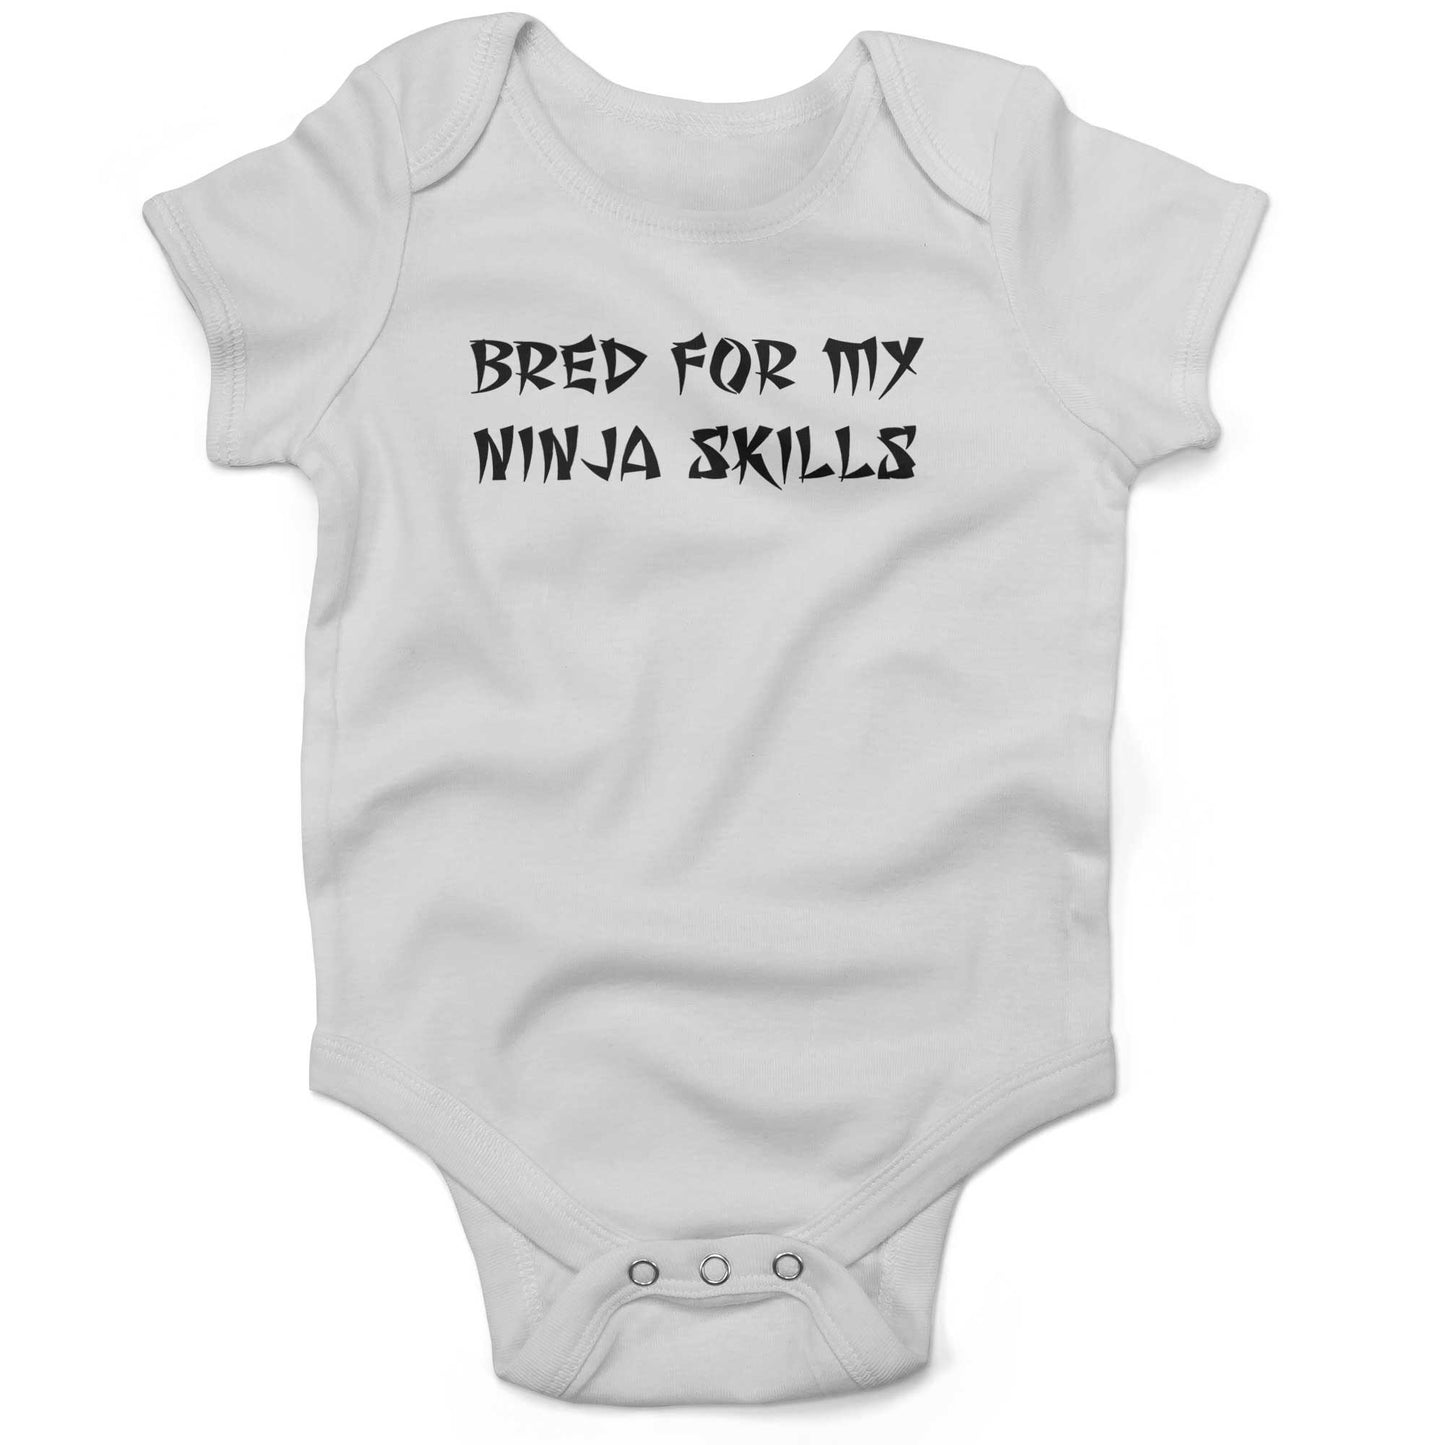 Bred For My Ninja Skills Infant Bodysuit or Raglan Baby Tee-White-3-6 months